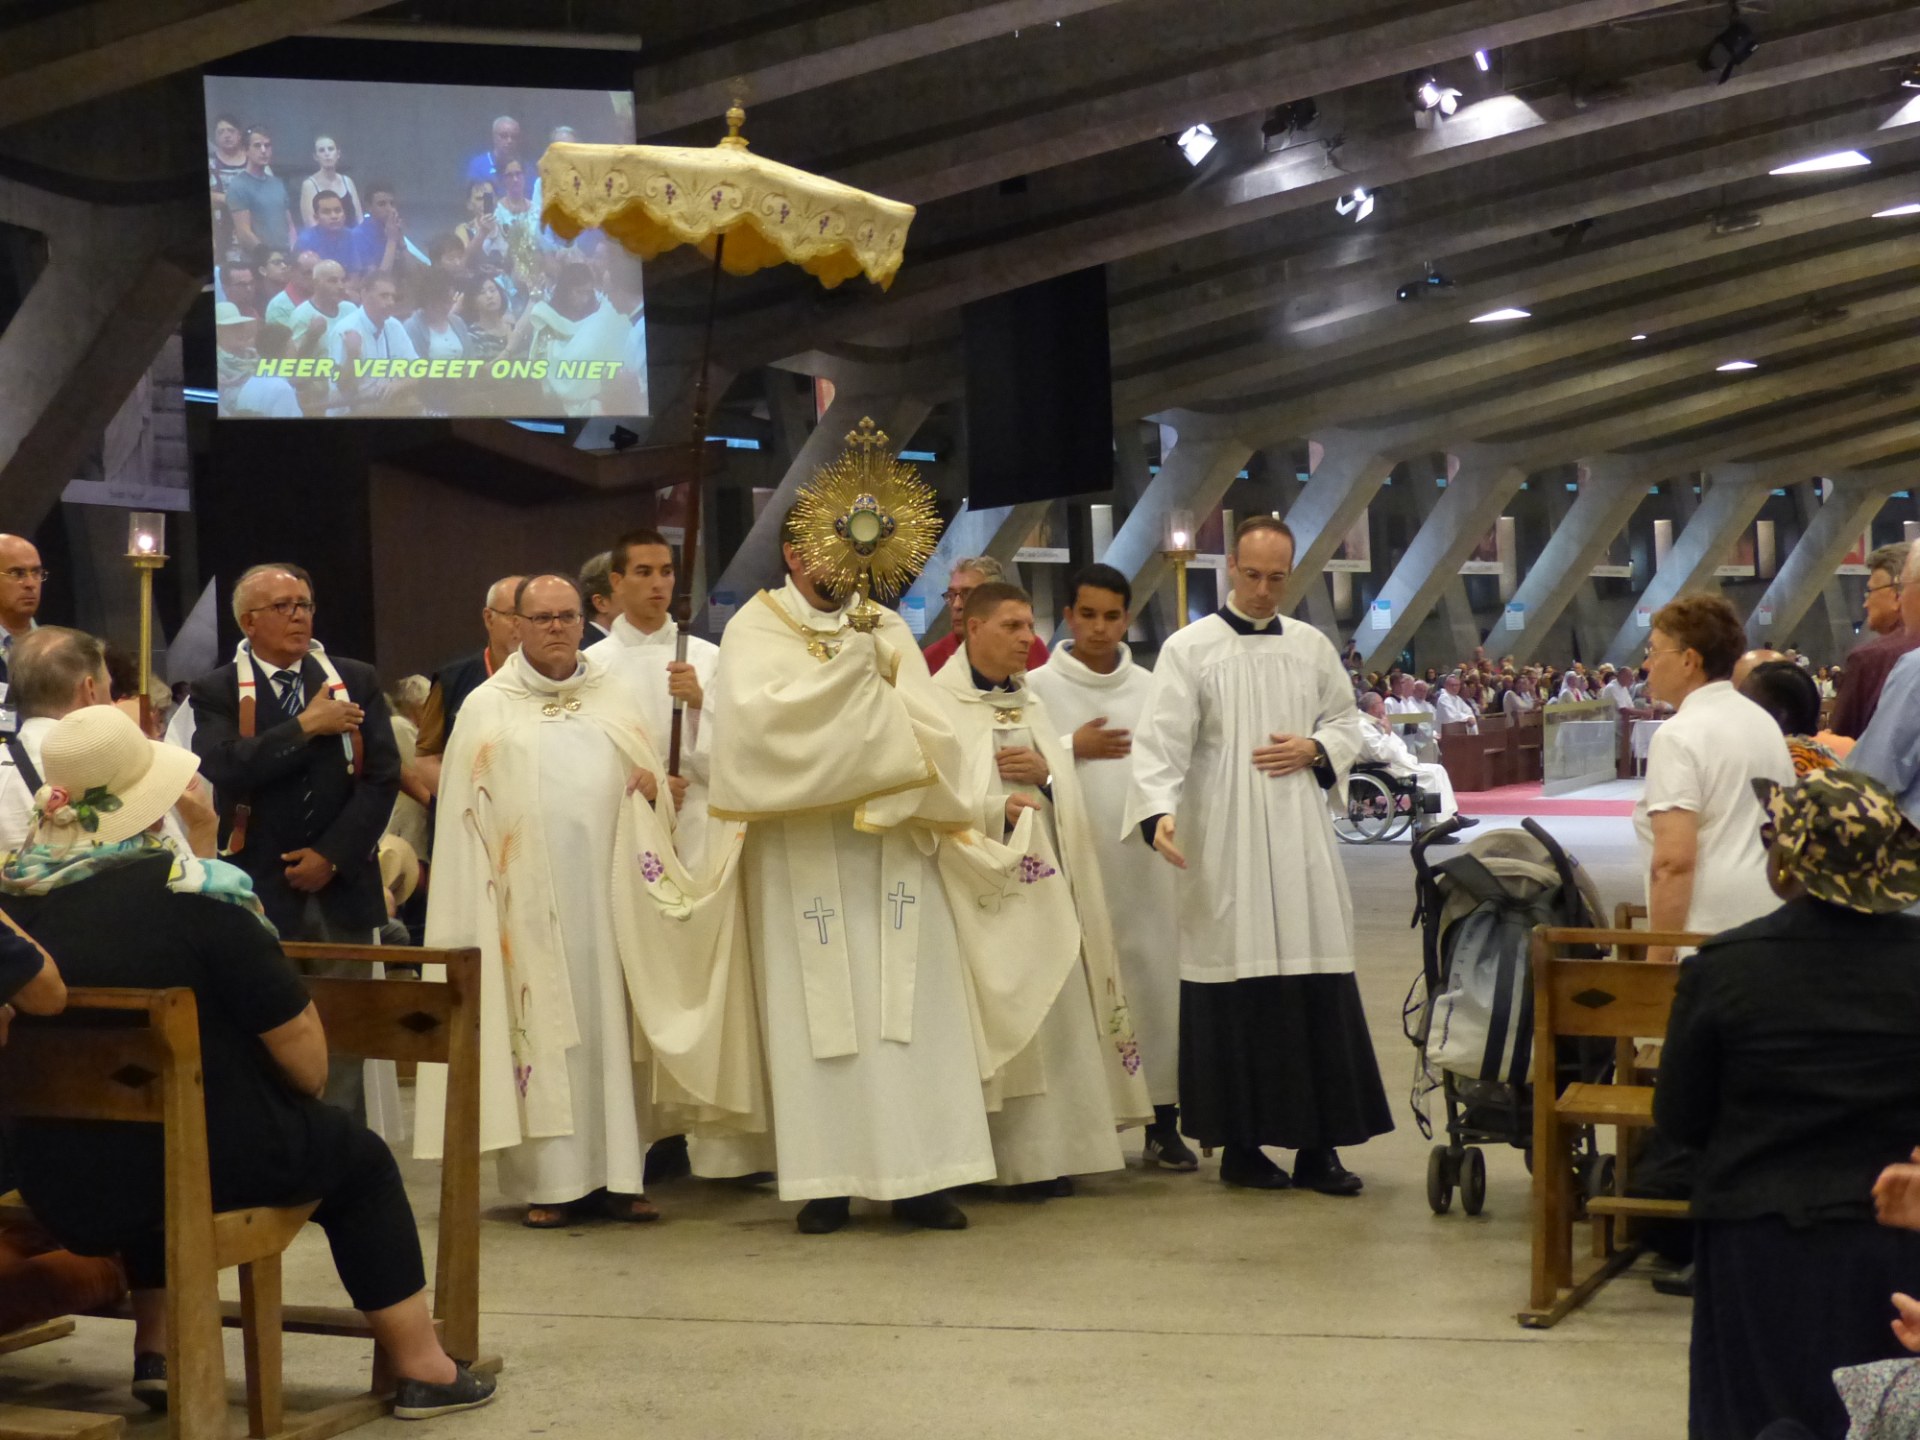 Lourdes2018-photos Saint-Sacrement (92)